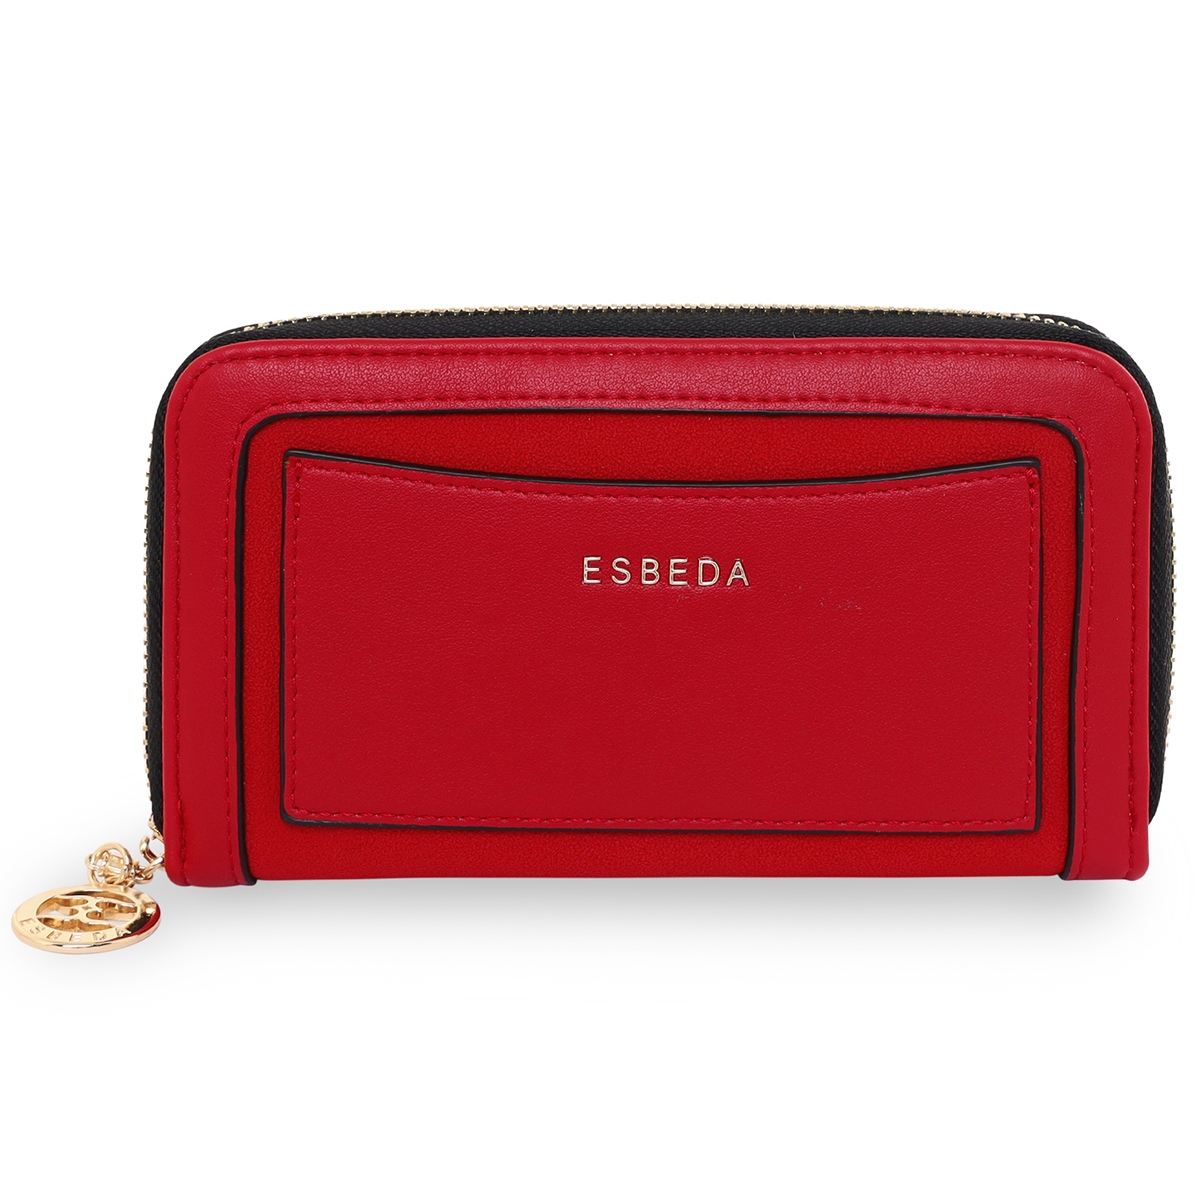 ESBEDA | ESBEDA Red Color Soft Suede Wallet For Women's- Medium